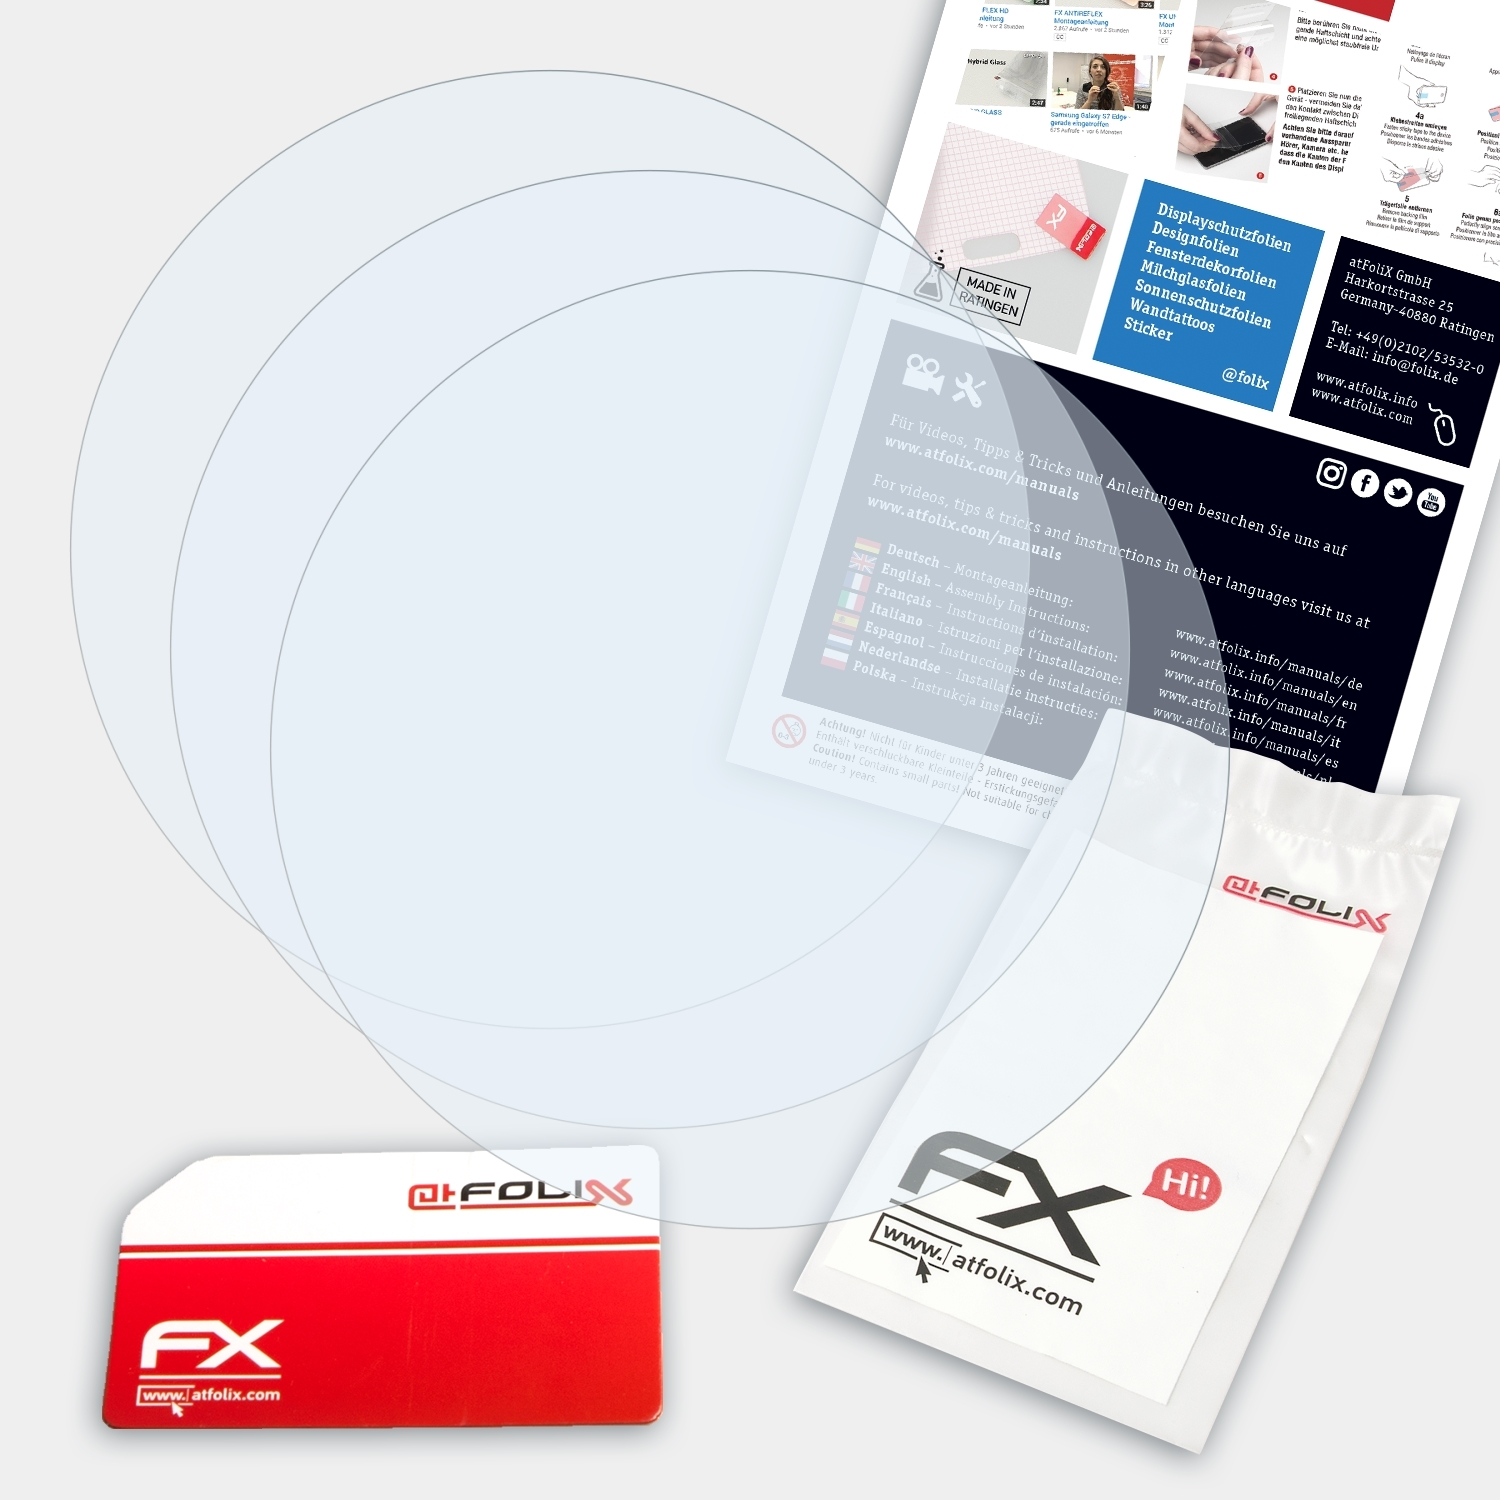 ATFOLIX 3x FX-Clear Displayschutz(für Polar Ignite)